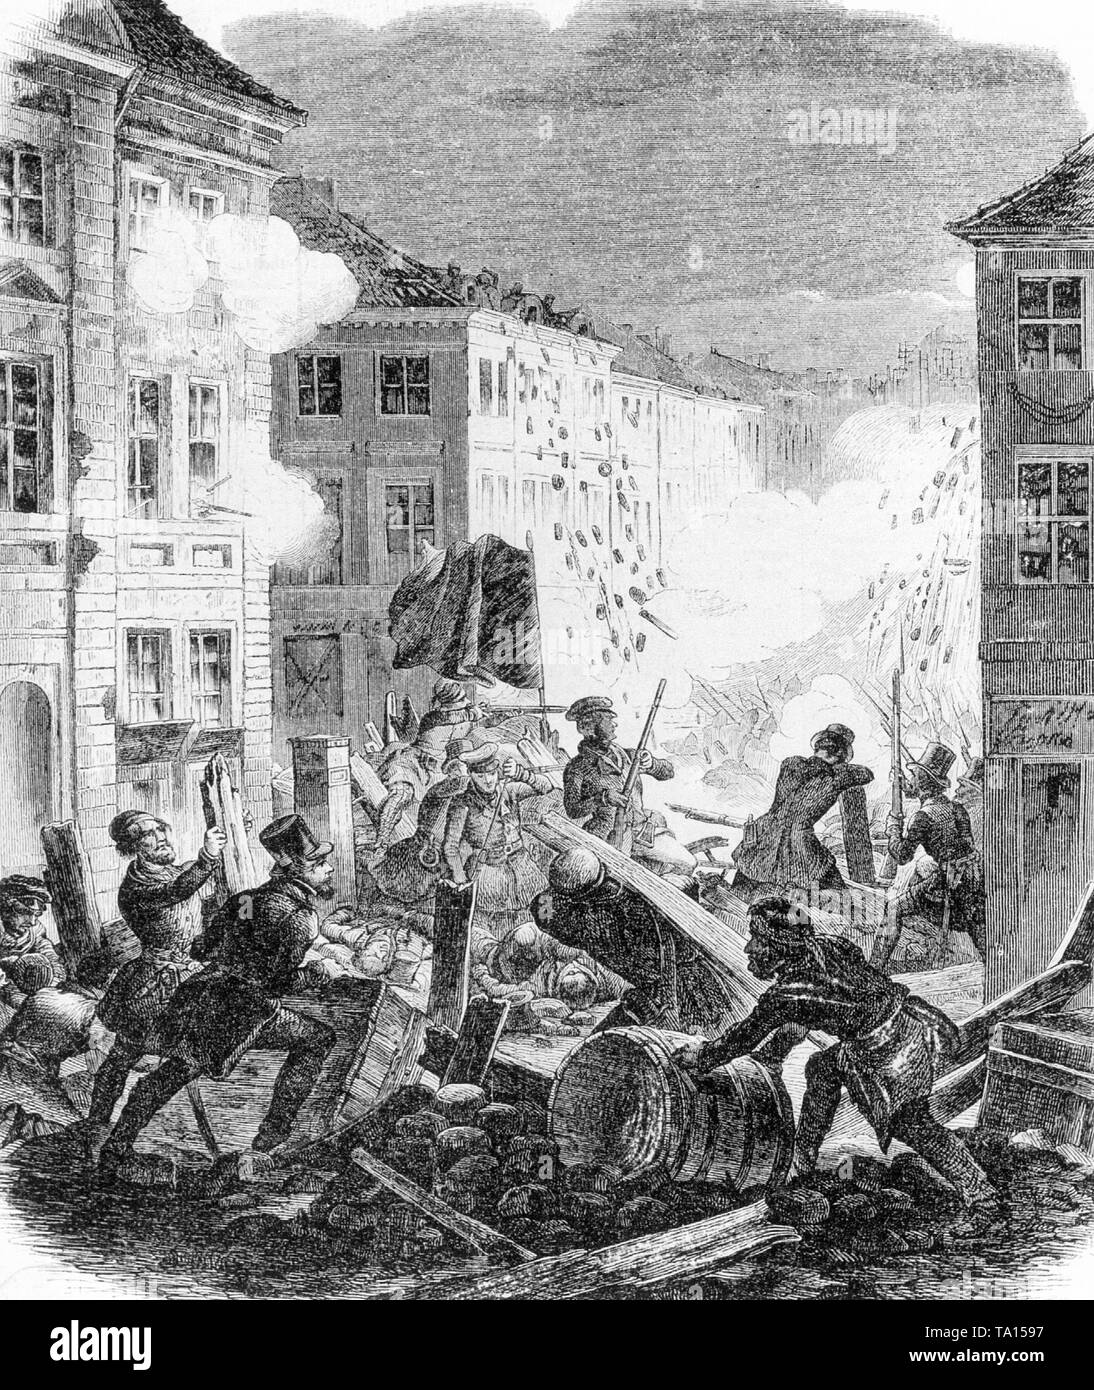 Batallas callejeras en Berlín durante la Revolución de Marzo. El dibujo  muestra la situación en el